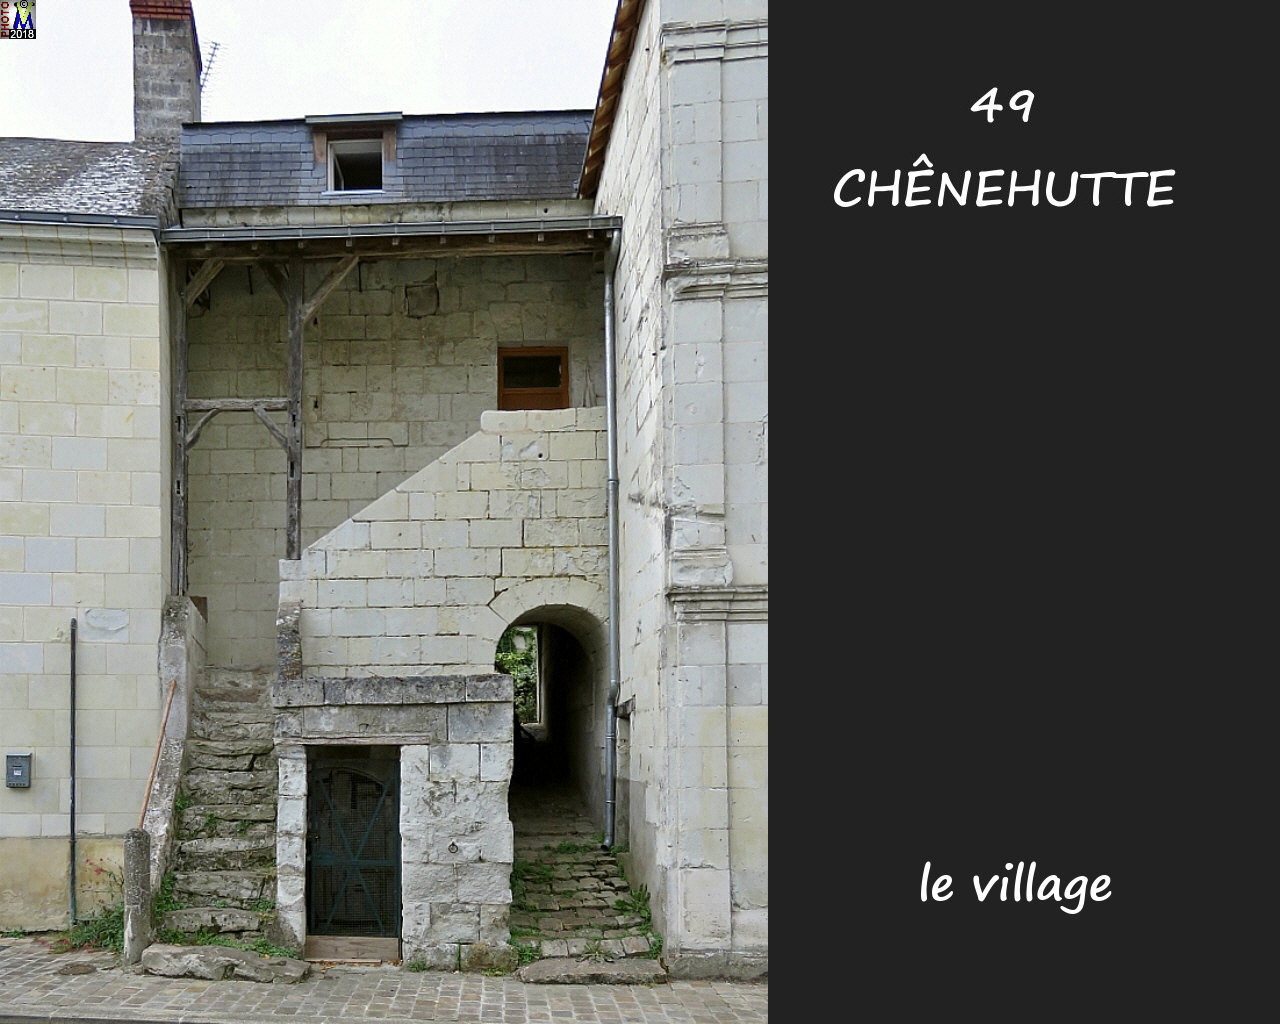 49CHENEHUTTE_village_1004.jpg